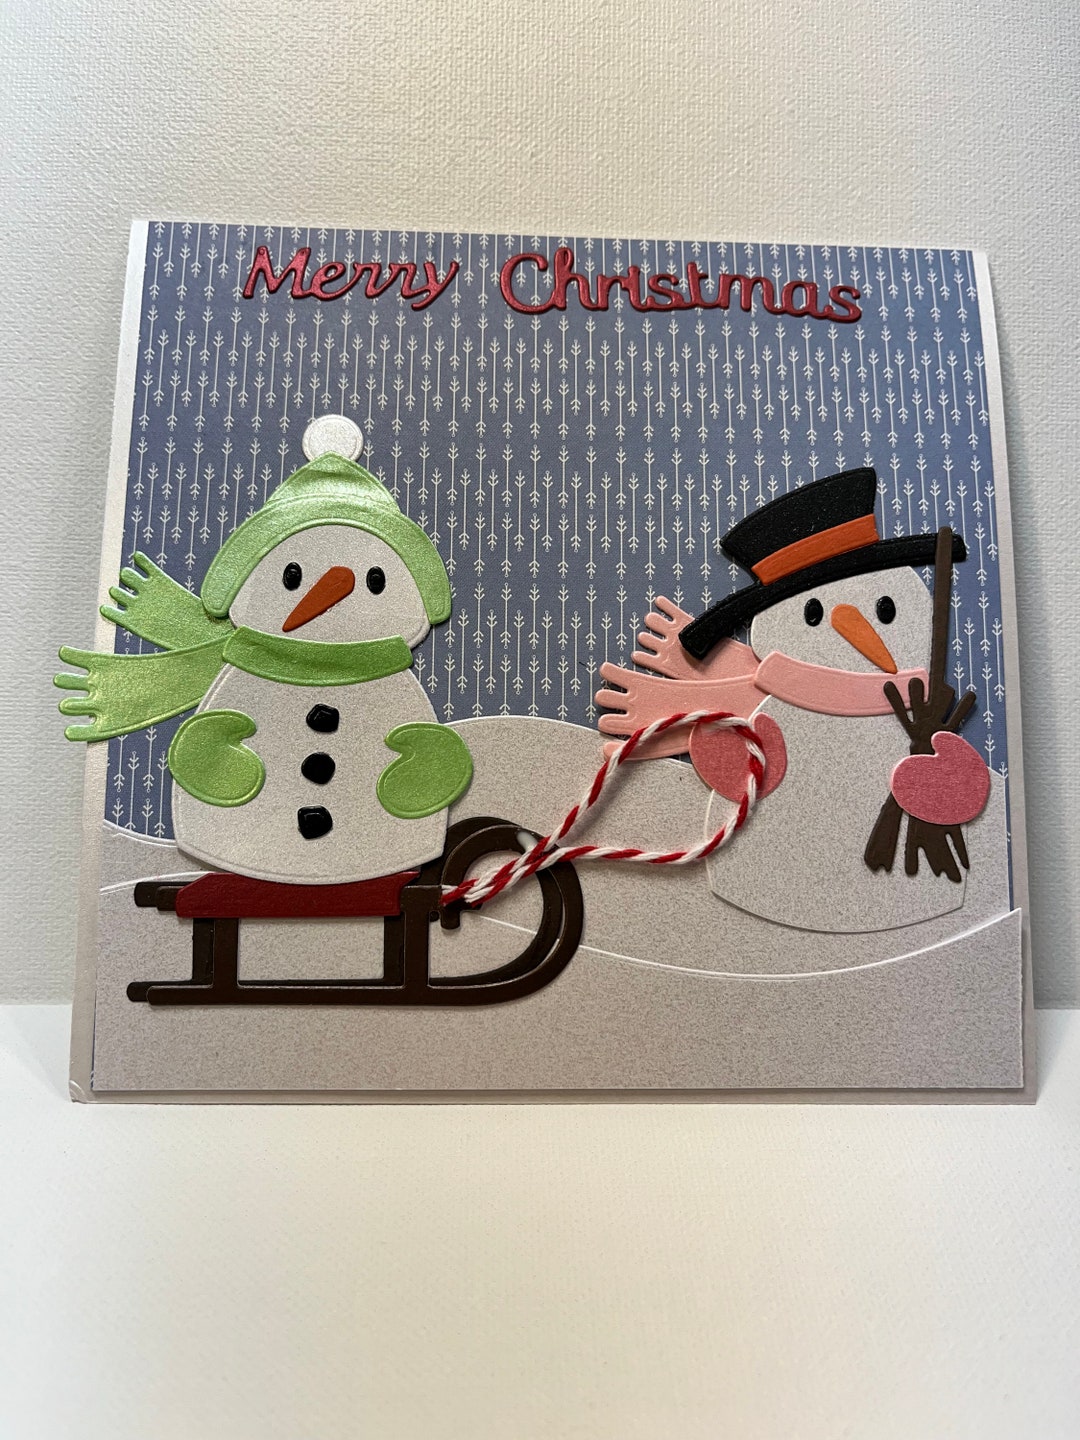 Merry Christmas Snowman Card 3D Snowman Card Handmade - Etsy